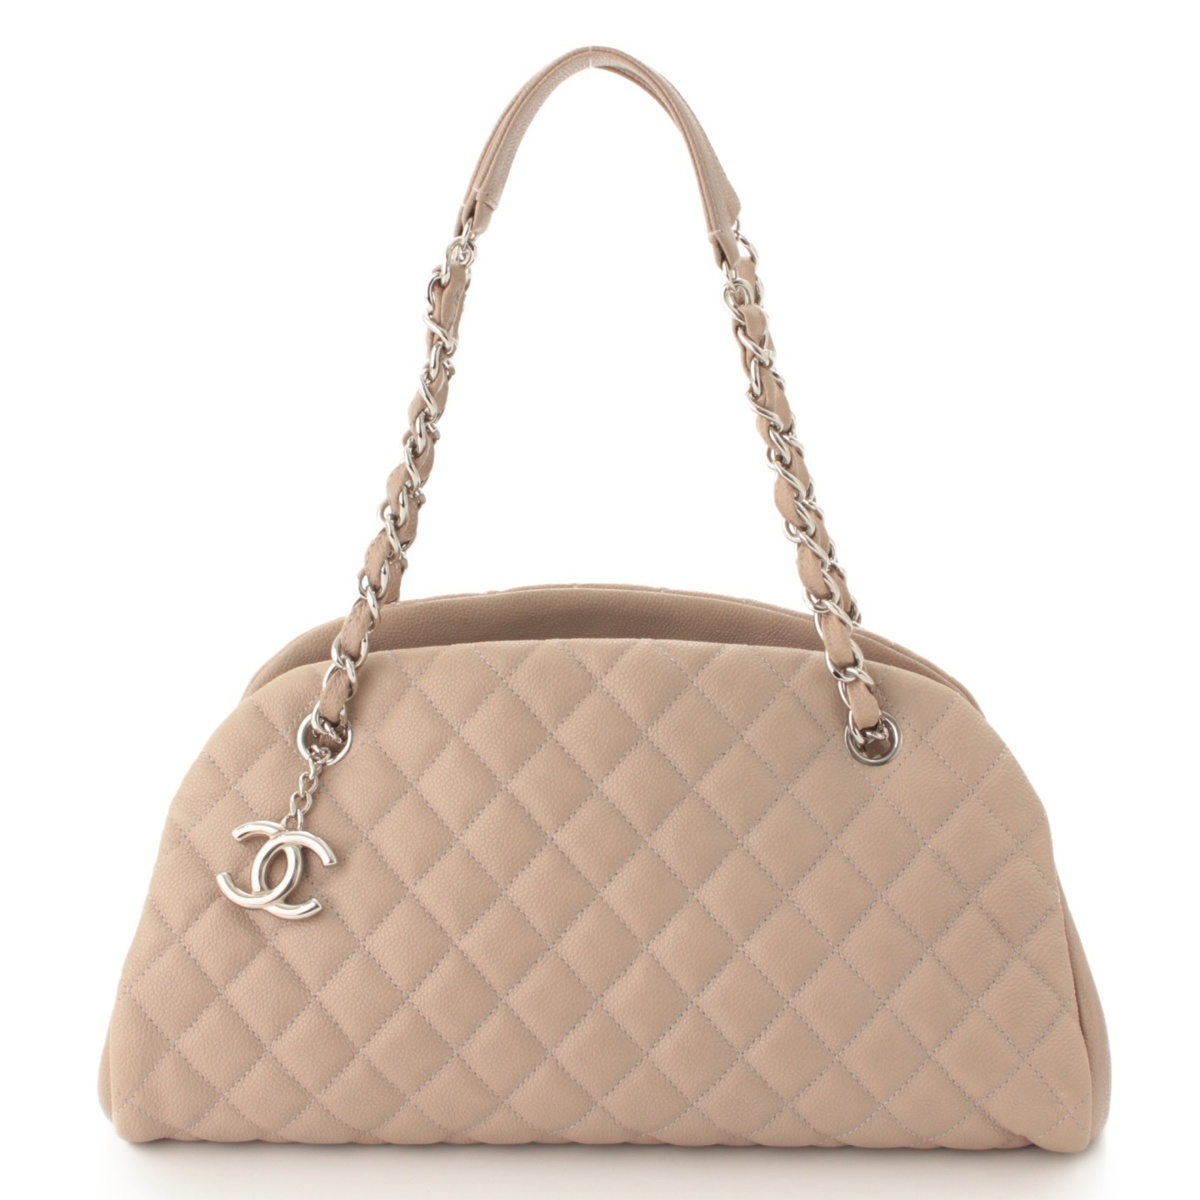 シャネル(Chanel) マドモアゼル マトラッセ キャビアスキン ショルダー ボーリングバッグ 15番台 ベージュ